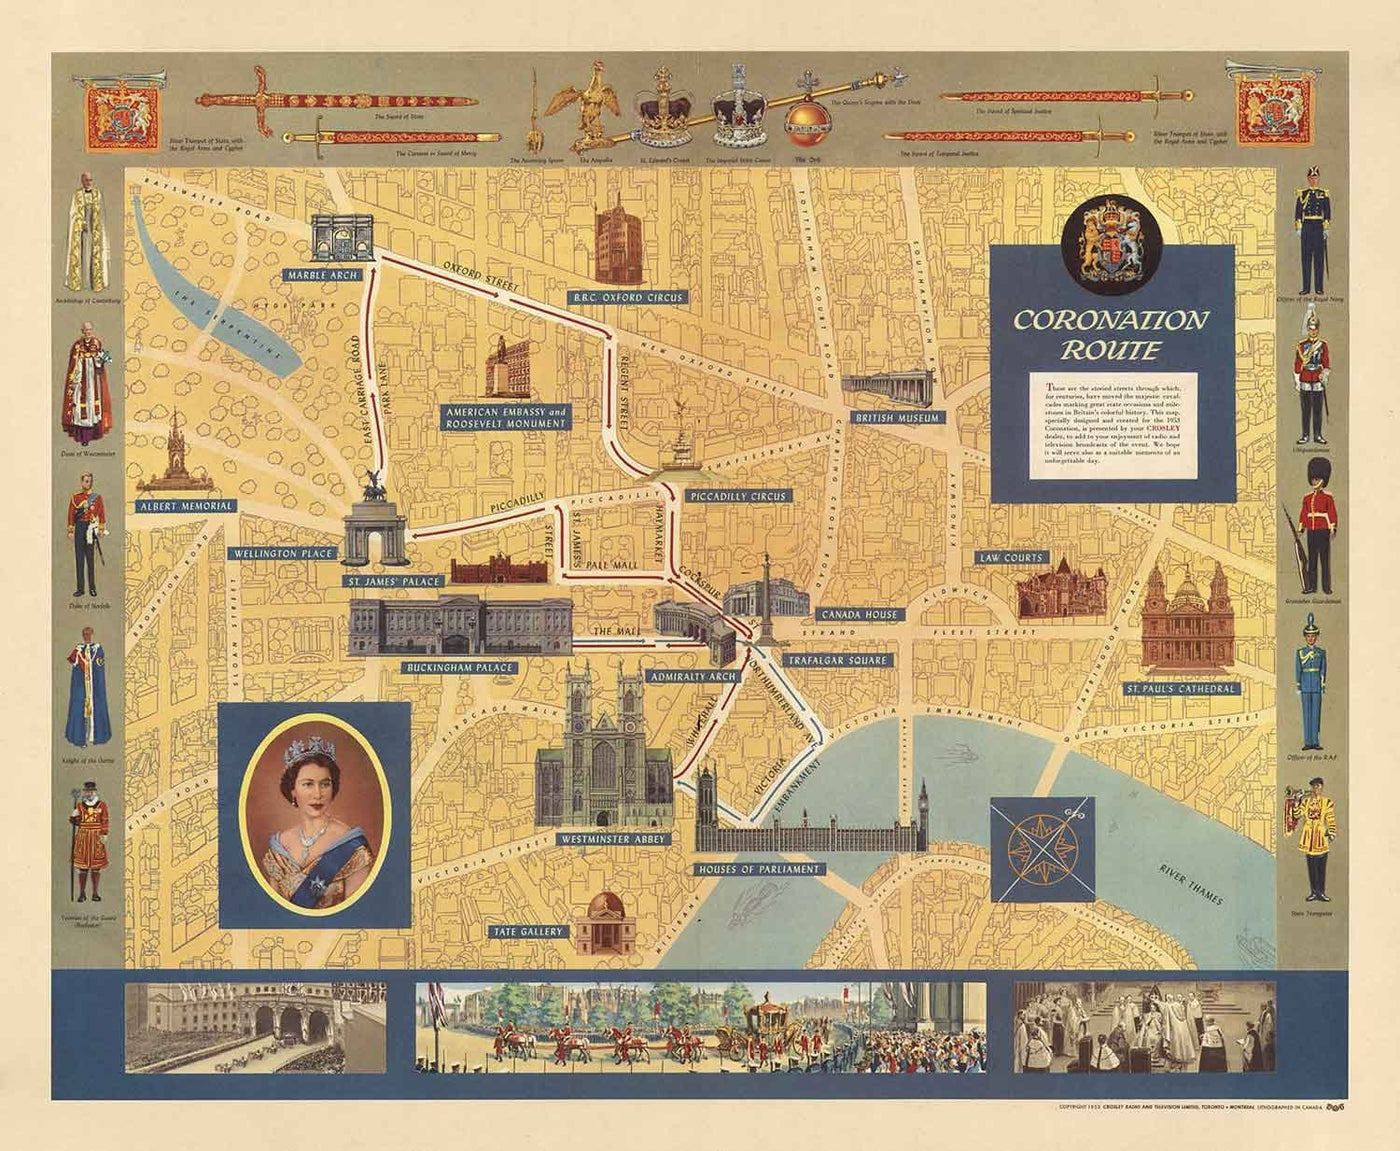 Alte Bildkarte der Krönung der Königin in London, 1953 von Crosley - HM Elizabeth II, Königliche Familie, Westminster